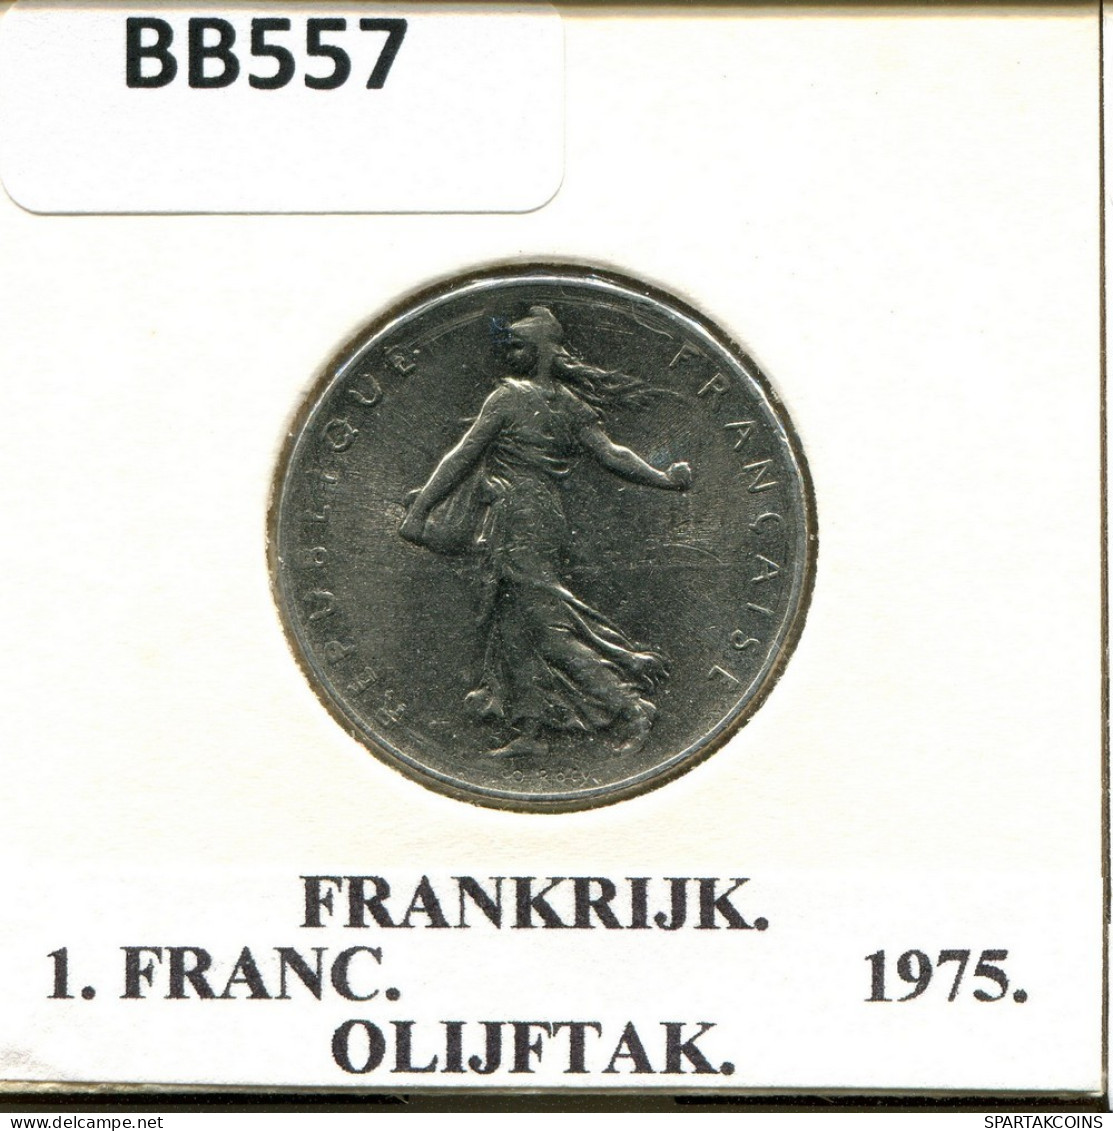 1 FRANC 1975 FRANCE Coin #BB557.U.A - 1 Franc